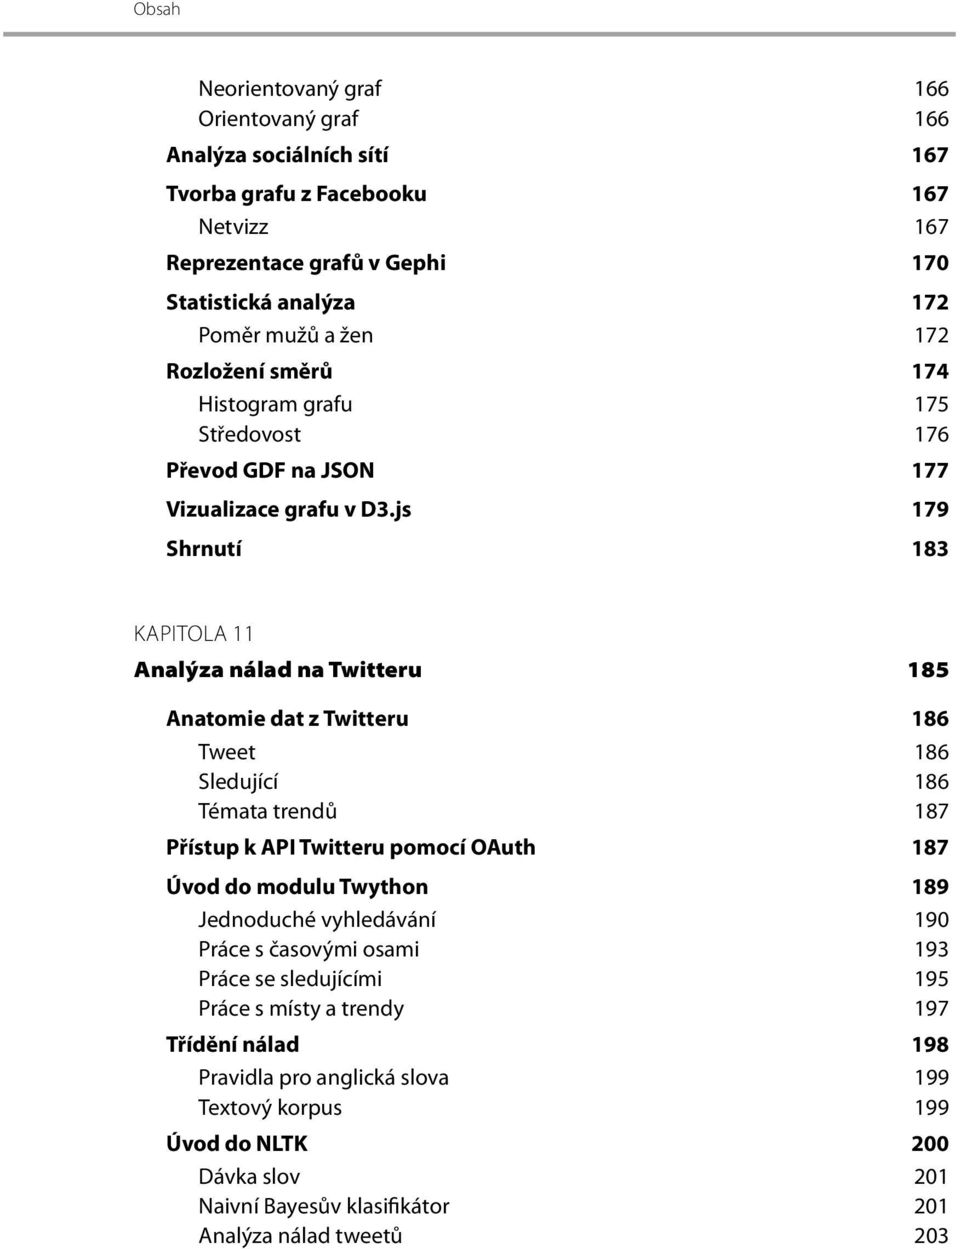 js 179 Shrnutí 183 KAPITOLA 11 Analýza nálad na Twitteru 185 Anatomie dat z Twitteru 186 Tweet 186 Sledující 186 Témata trendů 187 Přístup k API Twitteru pomocí OAuth 187 Úvod do modulu